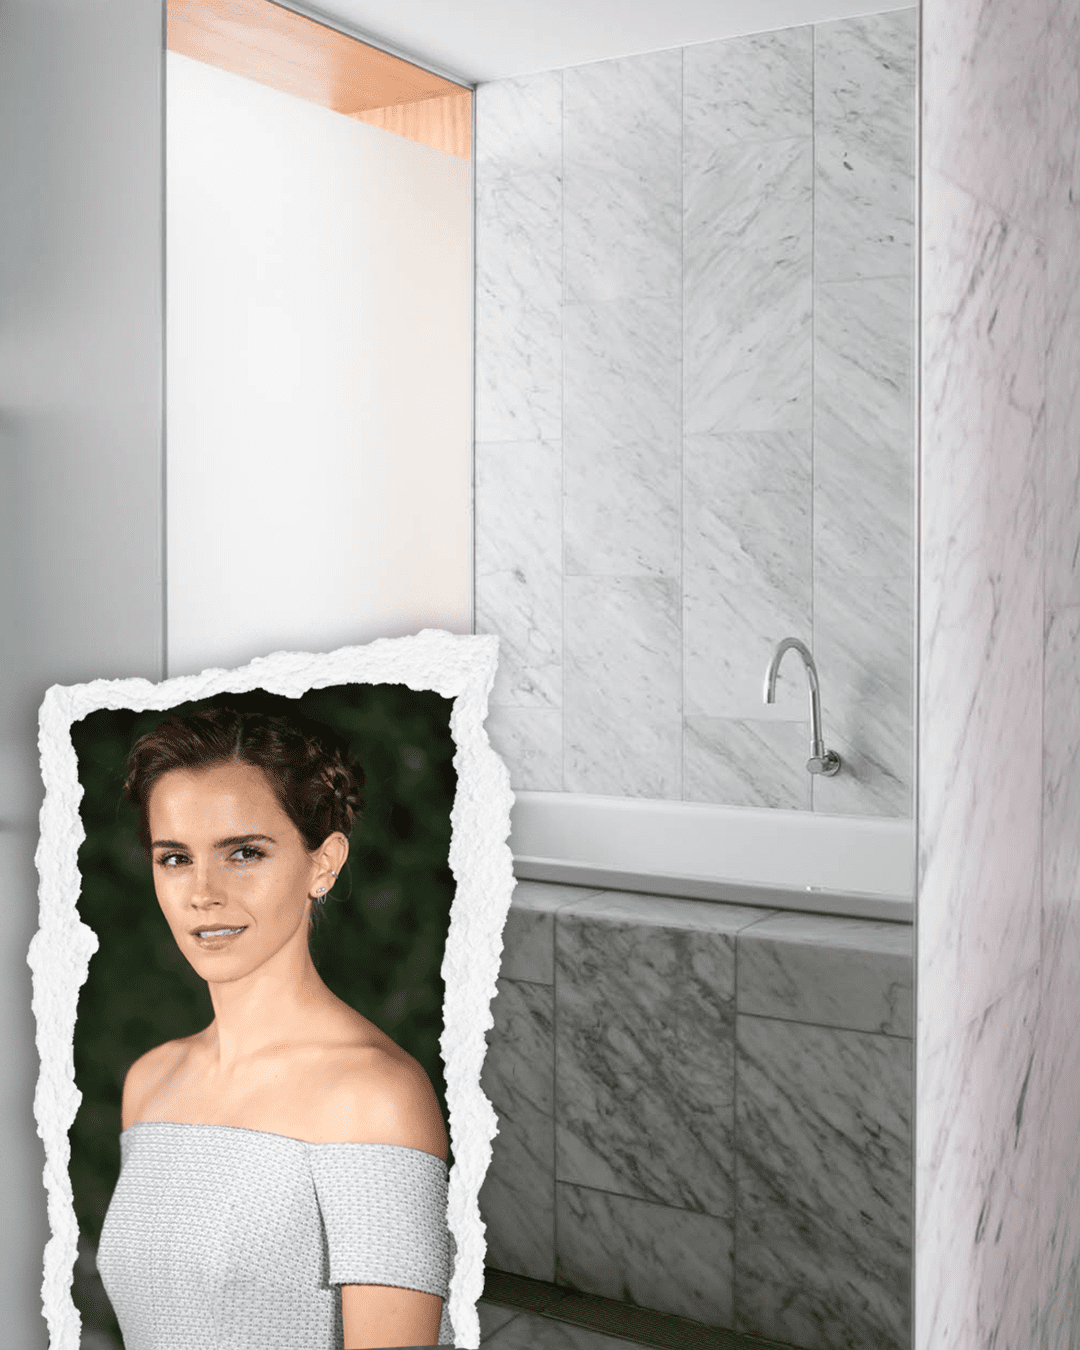 TOCH Journal Bathing Emma Watson 4 5